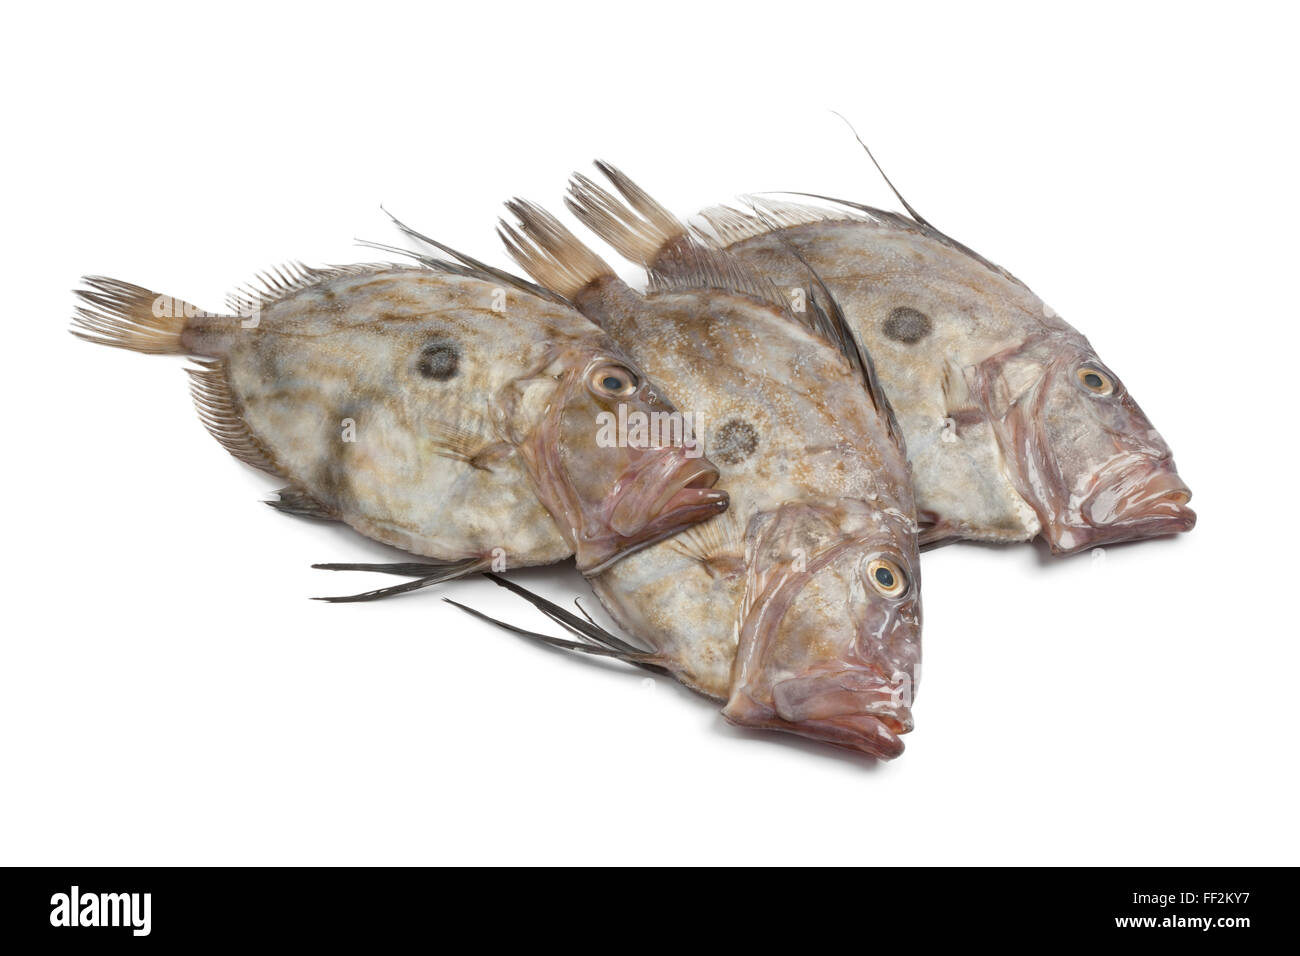 Fresh raw John Dory fishes on white background Stock Photo